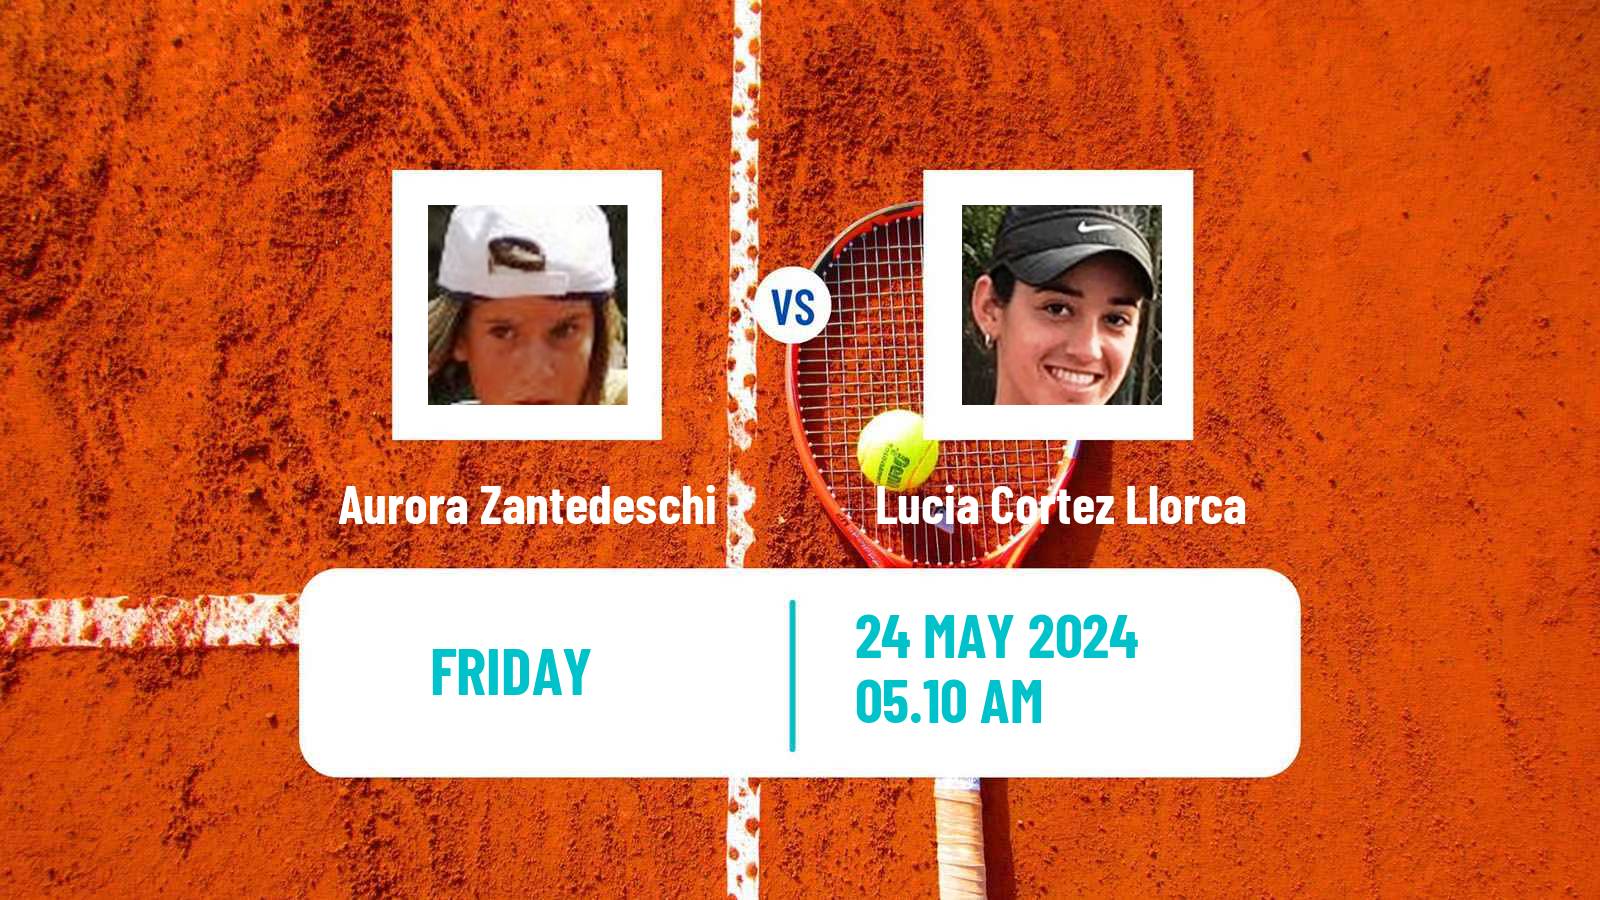 Tennis ITF W75 Grado Women Aurora Zantedeschi - Lucia Cortez Llorca